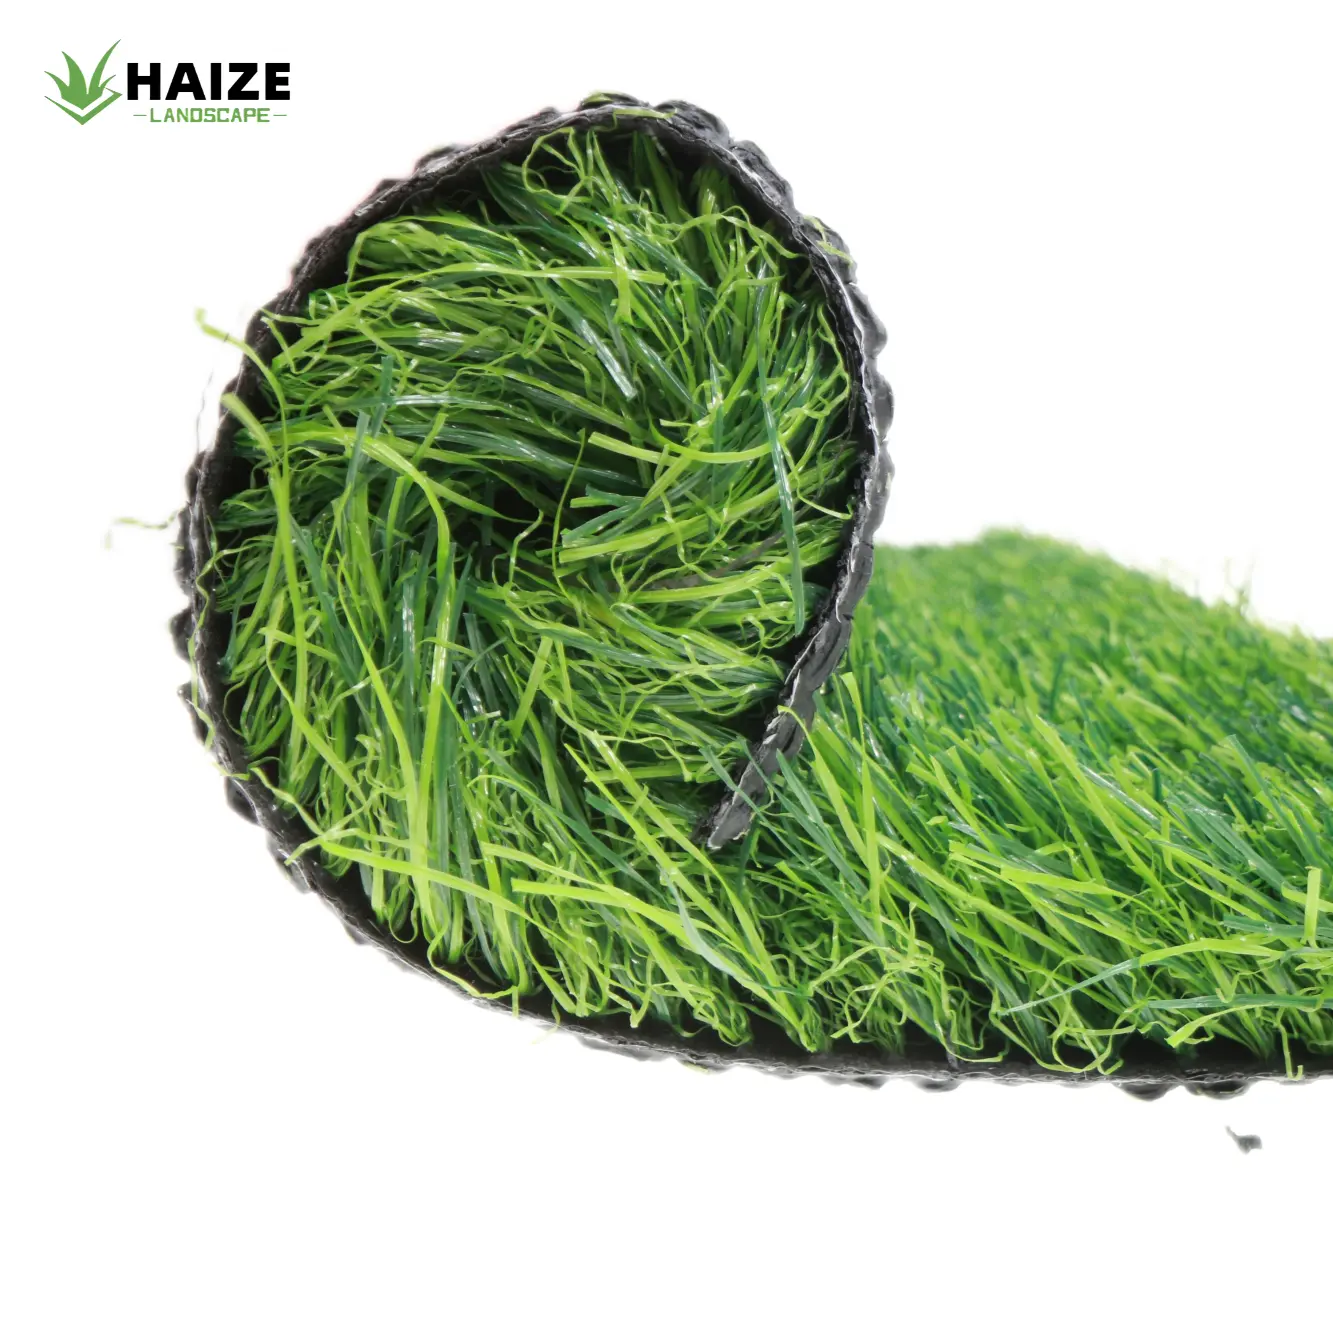 HAIZE 저렴한 바닥 플라스틱 잔디 잔디 녹색 카펫 결혼식 인공 잔디